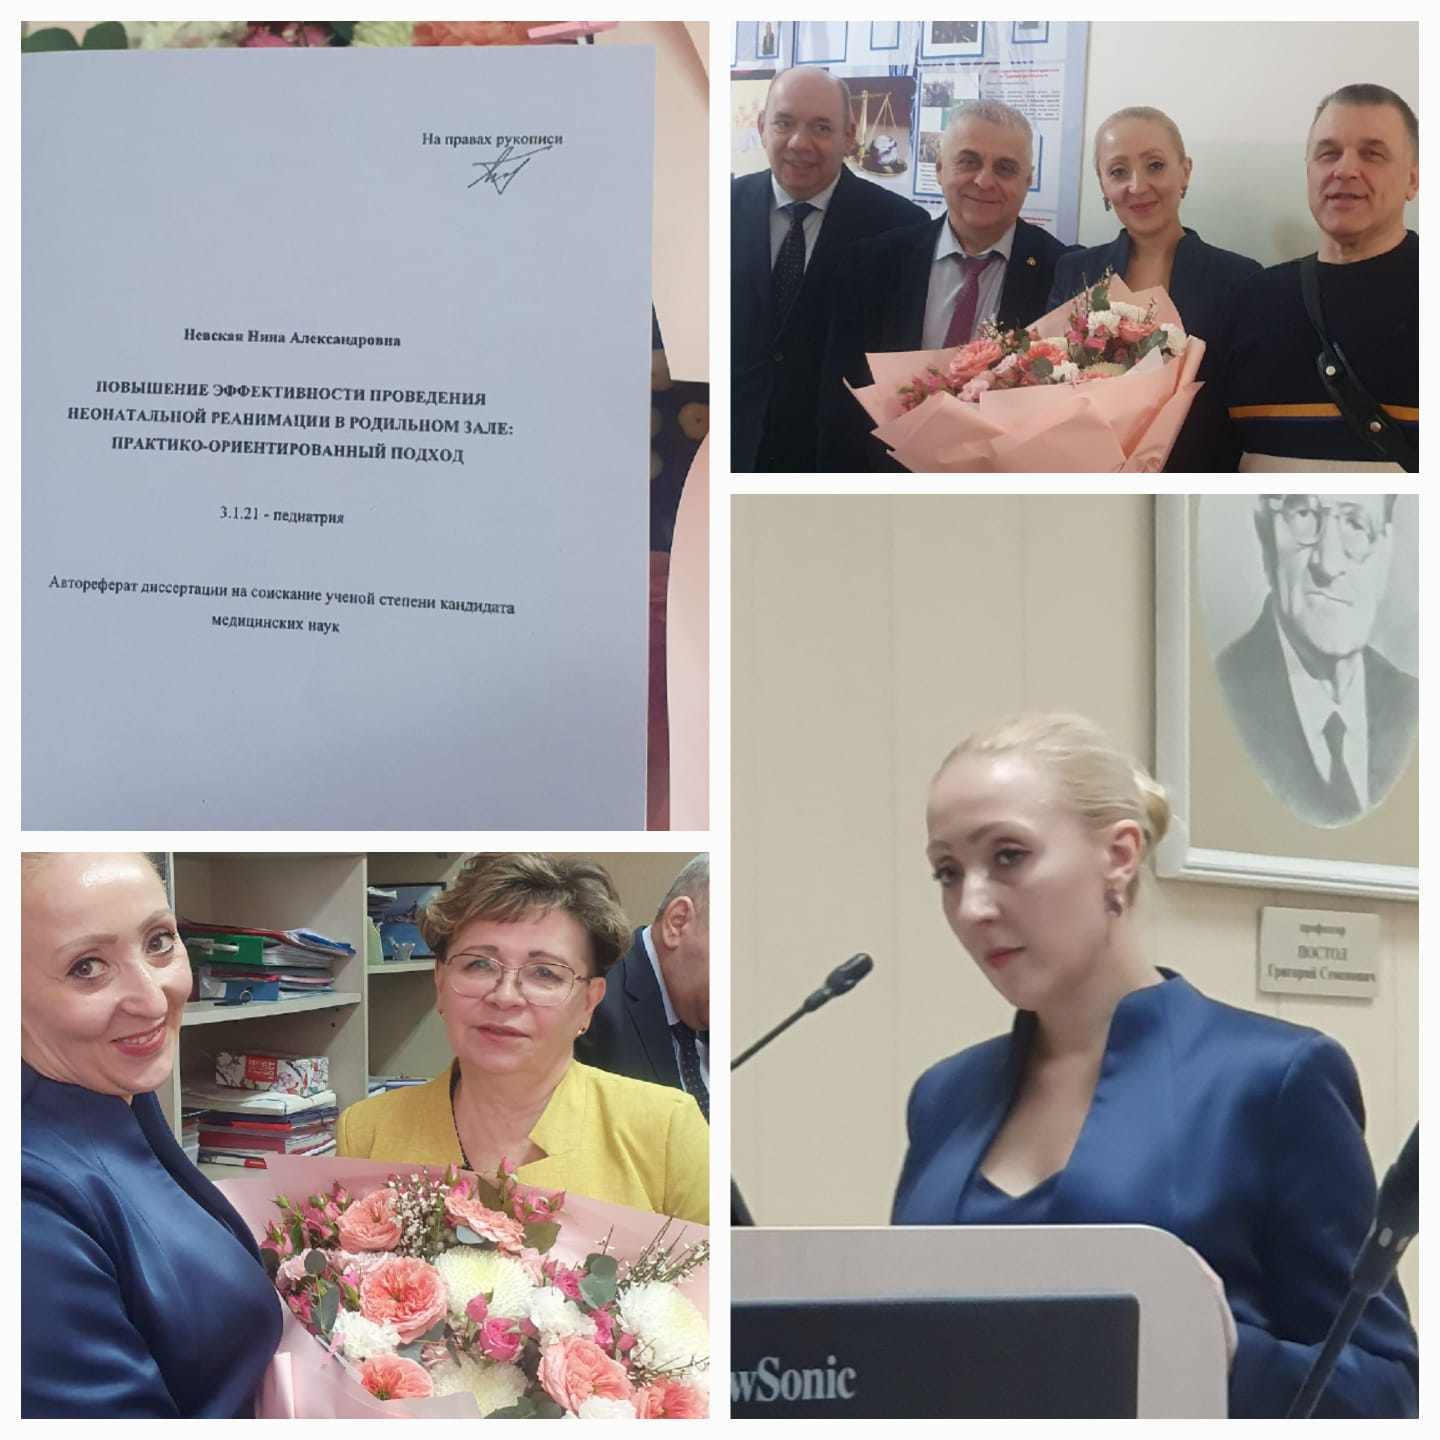 Поздравляем Невскую Нину Александровну с защитой диссертации!